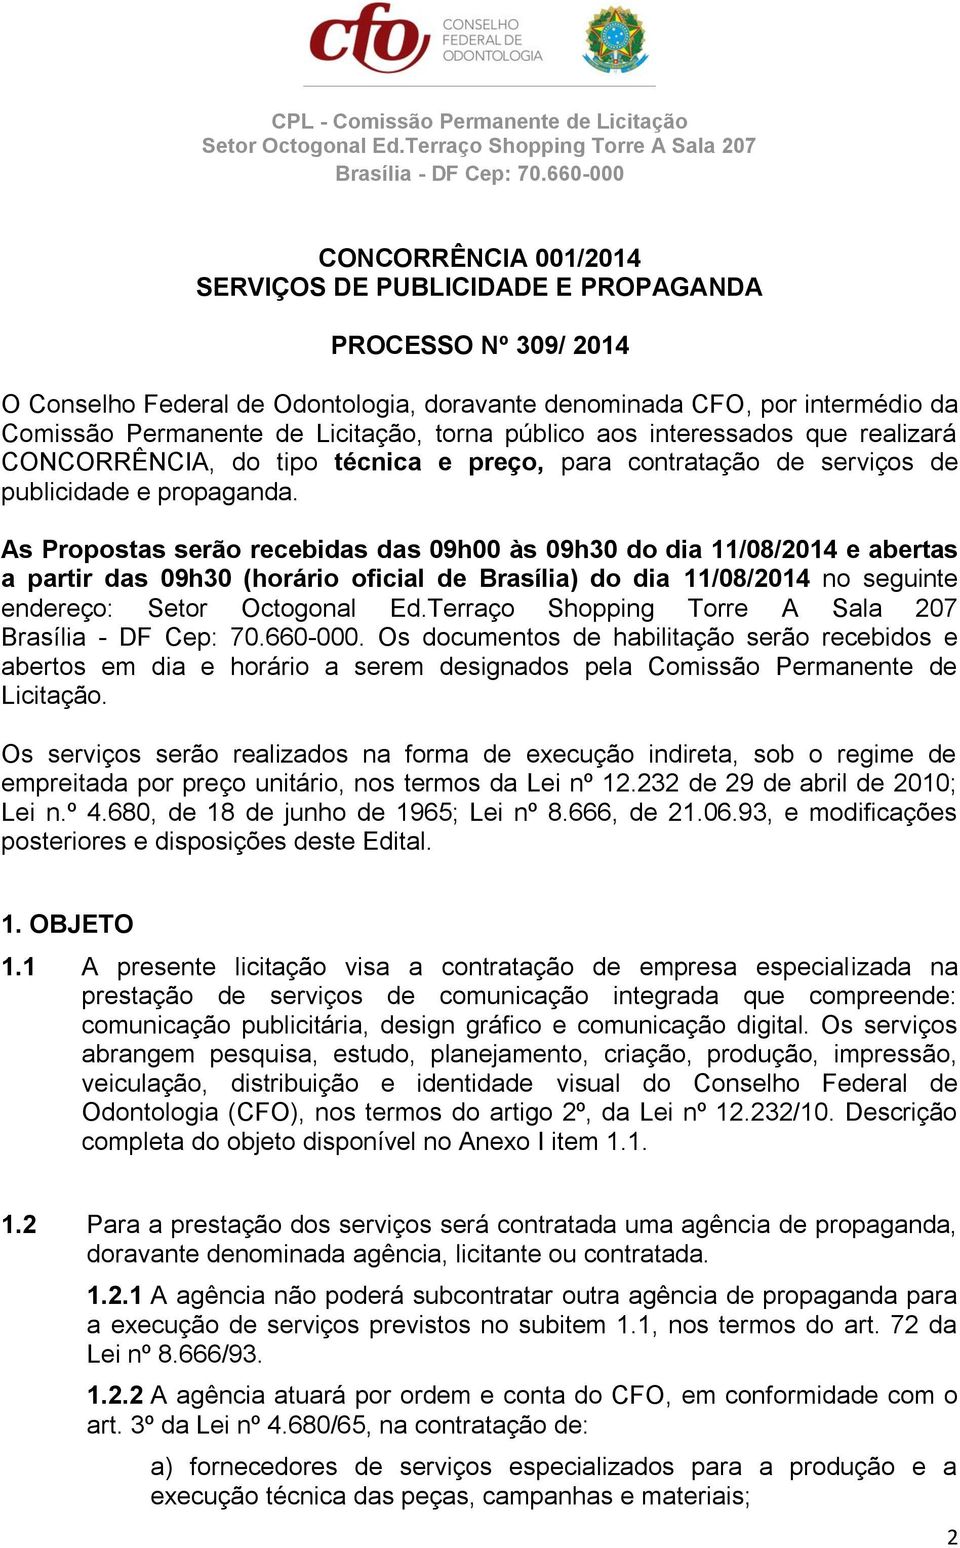 As Propostas serão recebidas das 09h00 às 09h30 do dia 11/08/2014 e abertas a partir das 09h30 (horário oficial de Brasília) do dia 11/08/2014 no seguinte endereço:.